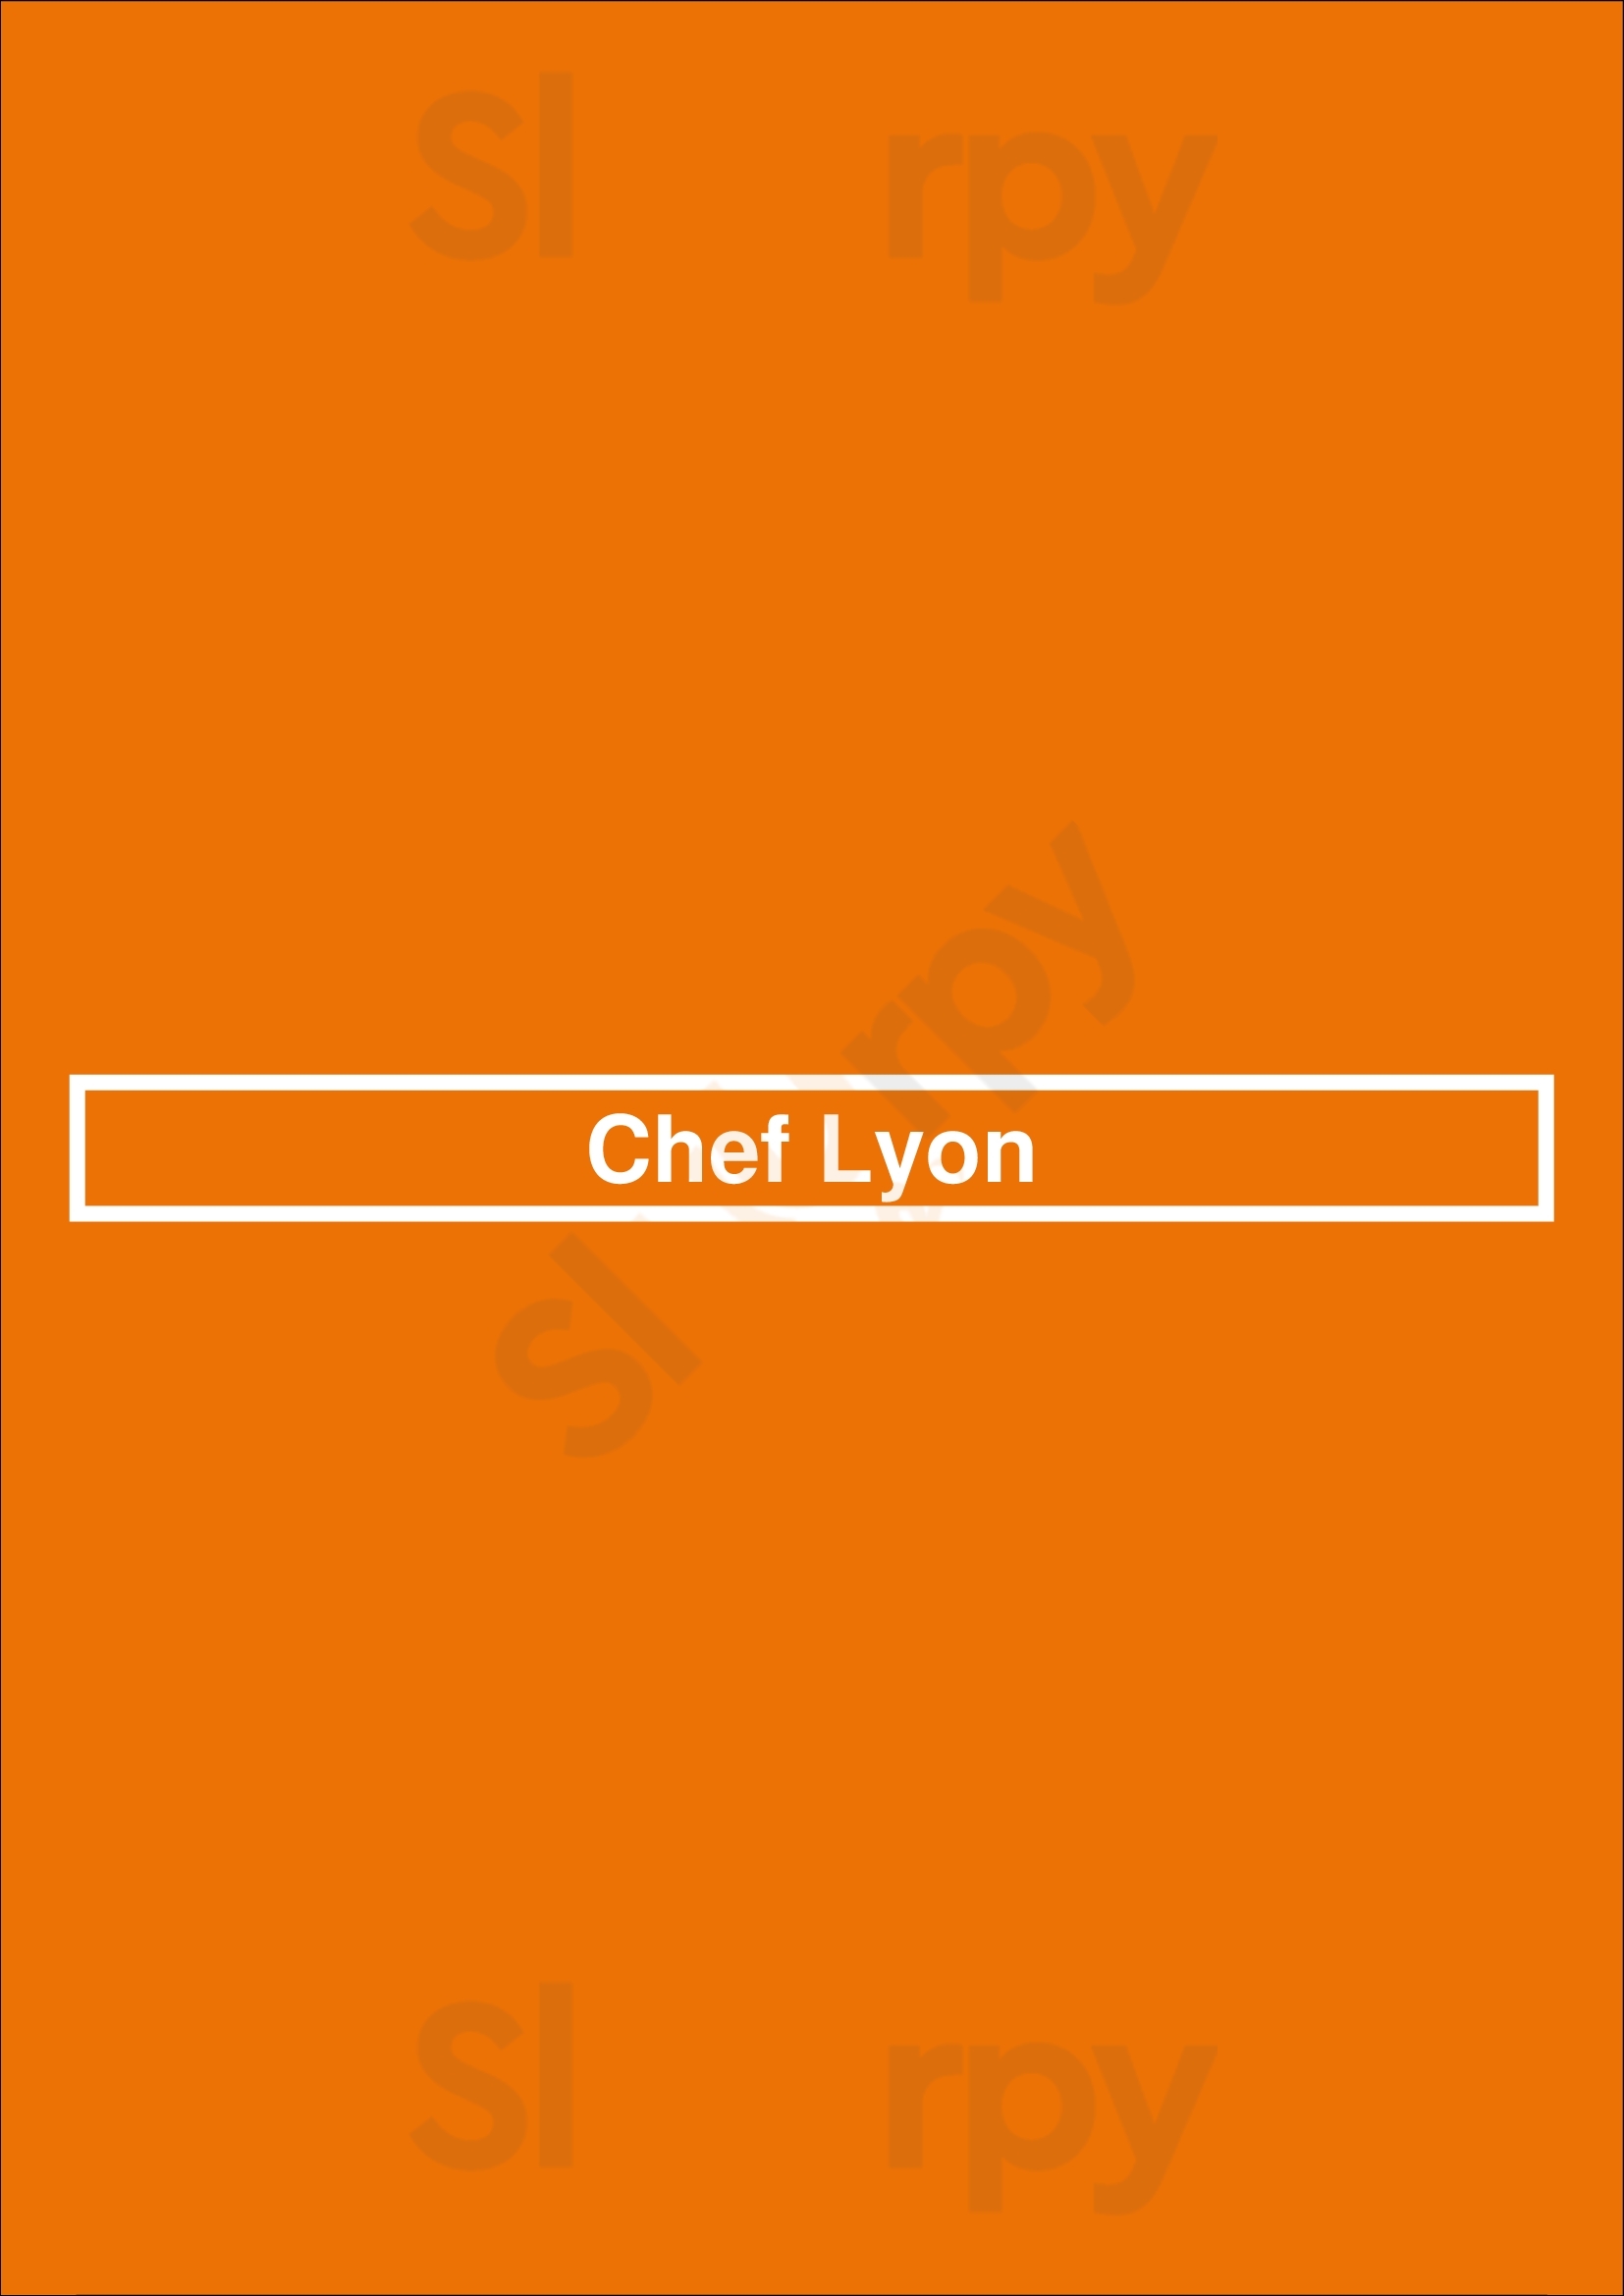 Chef Lyon Lyon Menu - 1